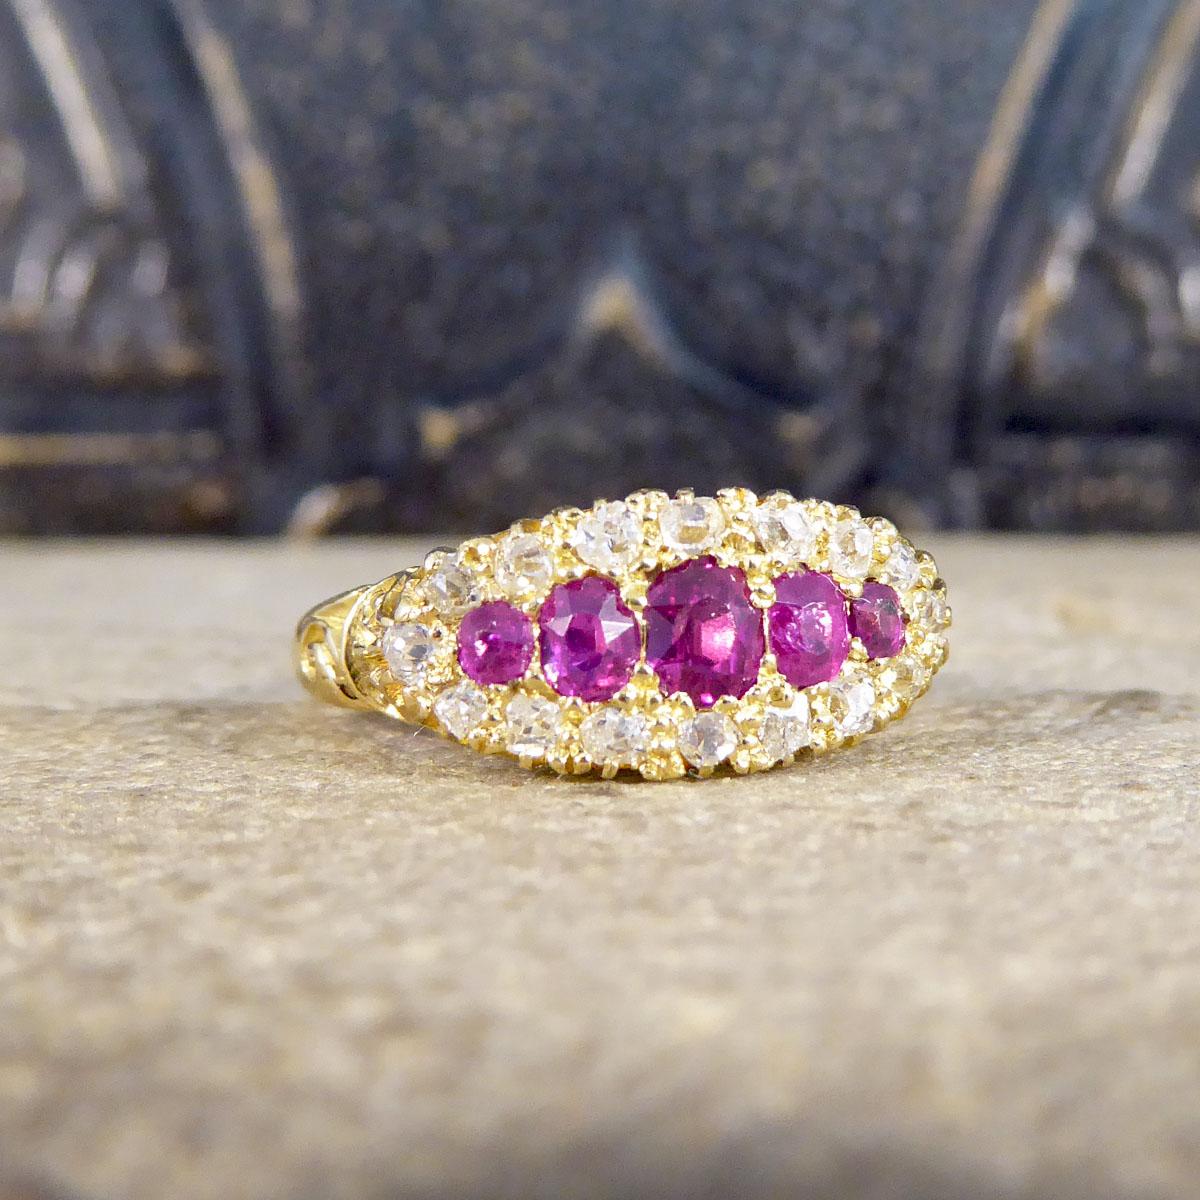 Dieser wunderschöne Ring von wahrer antiker Schönheit wurde in der spätviktorianischen Ära handgefertigt und zeichnet sich durch seine hohe Handwerkskunst und die verwendeten Steine aus. Dieser Ring besteht aus fünf leuchtenden und schönen Rubinen